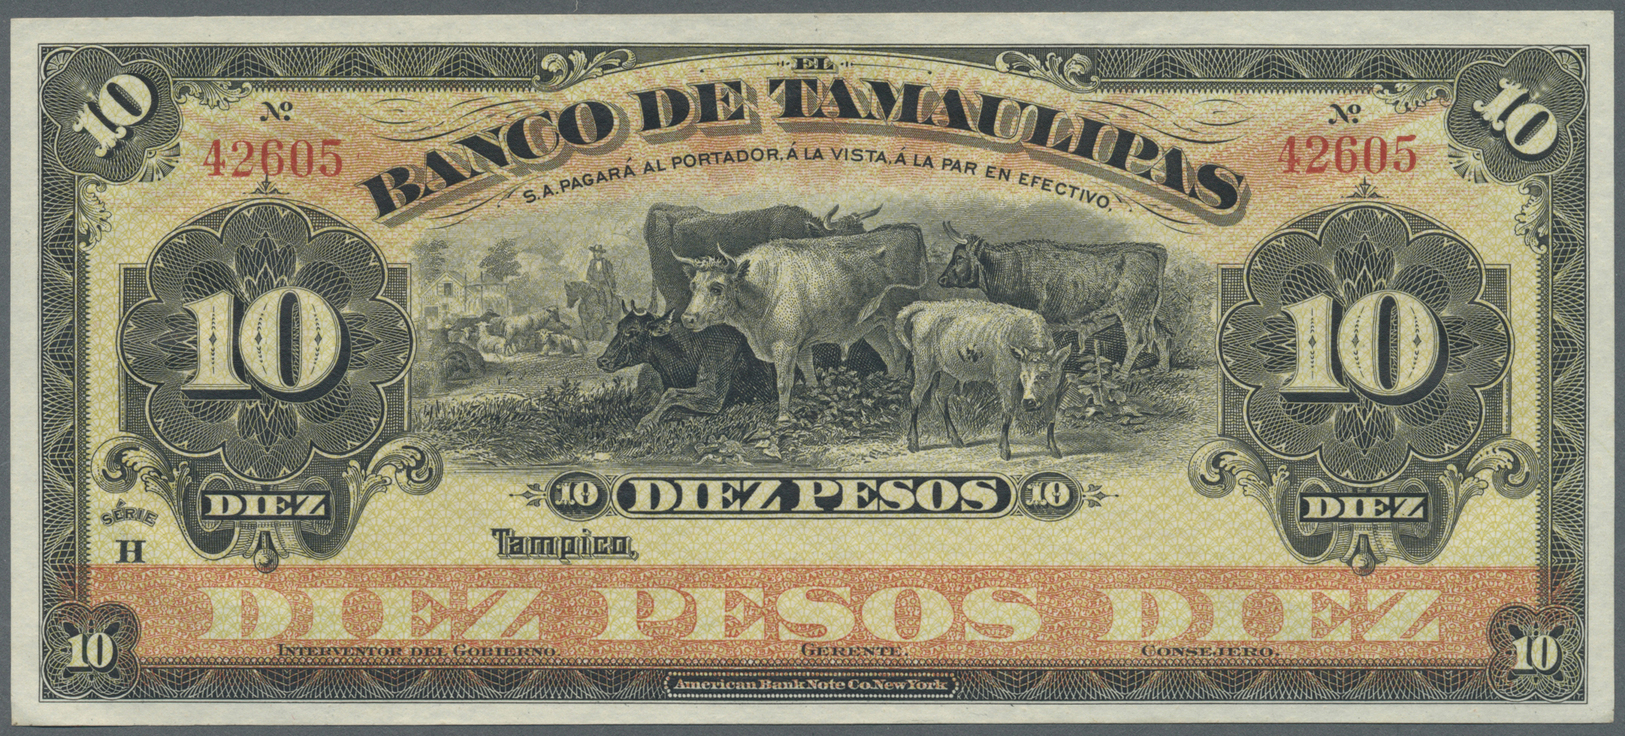 01718 Mexico: El Banco De Tamaulipas 10 Pesos ND Remainder P. S430r, Very Minor Corner Bend, Otherwise Perfect, Conditio - Mexico